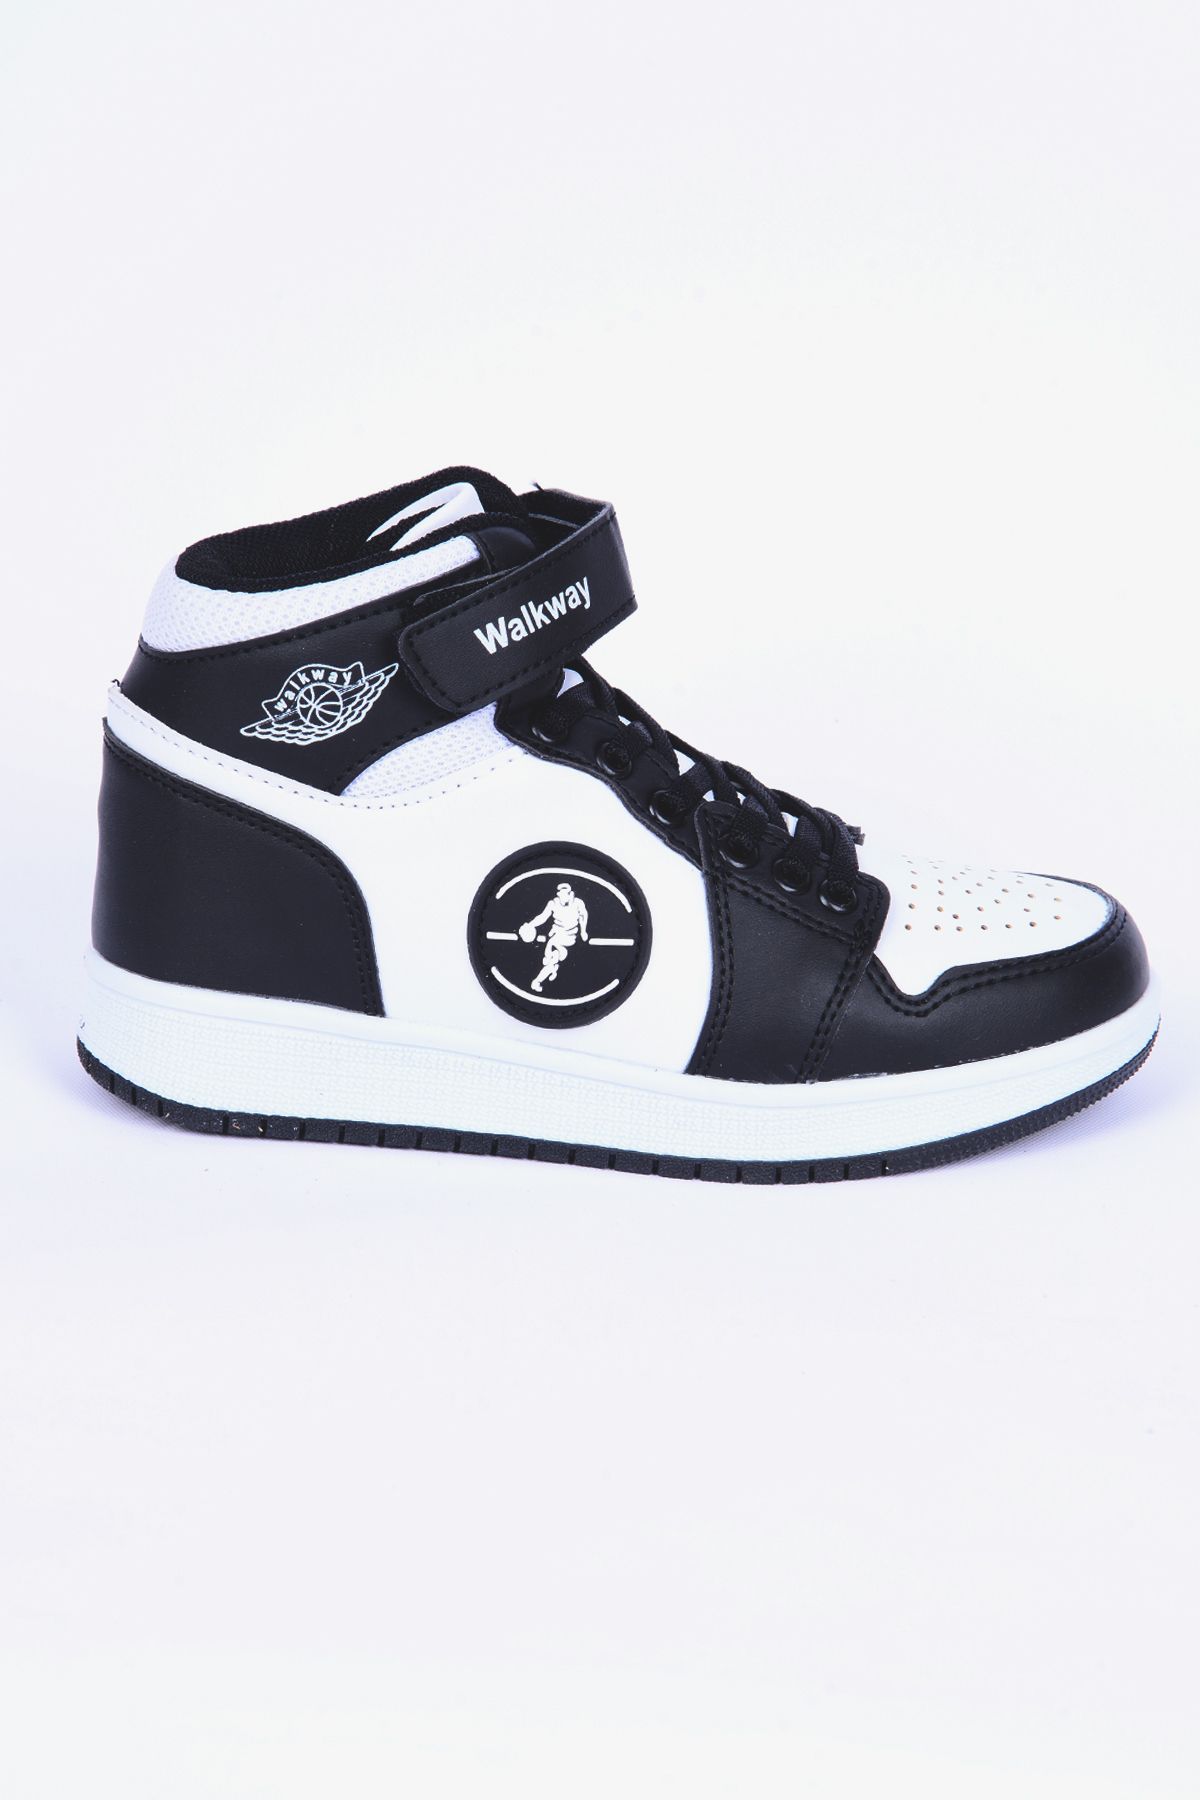 WALKWAY Sloga Hı F Deri Boğazlı Rahat Taban Siyah-beyaz Günlük Unisex Çocuk Spor Ayakkabı